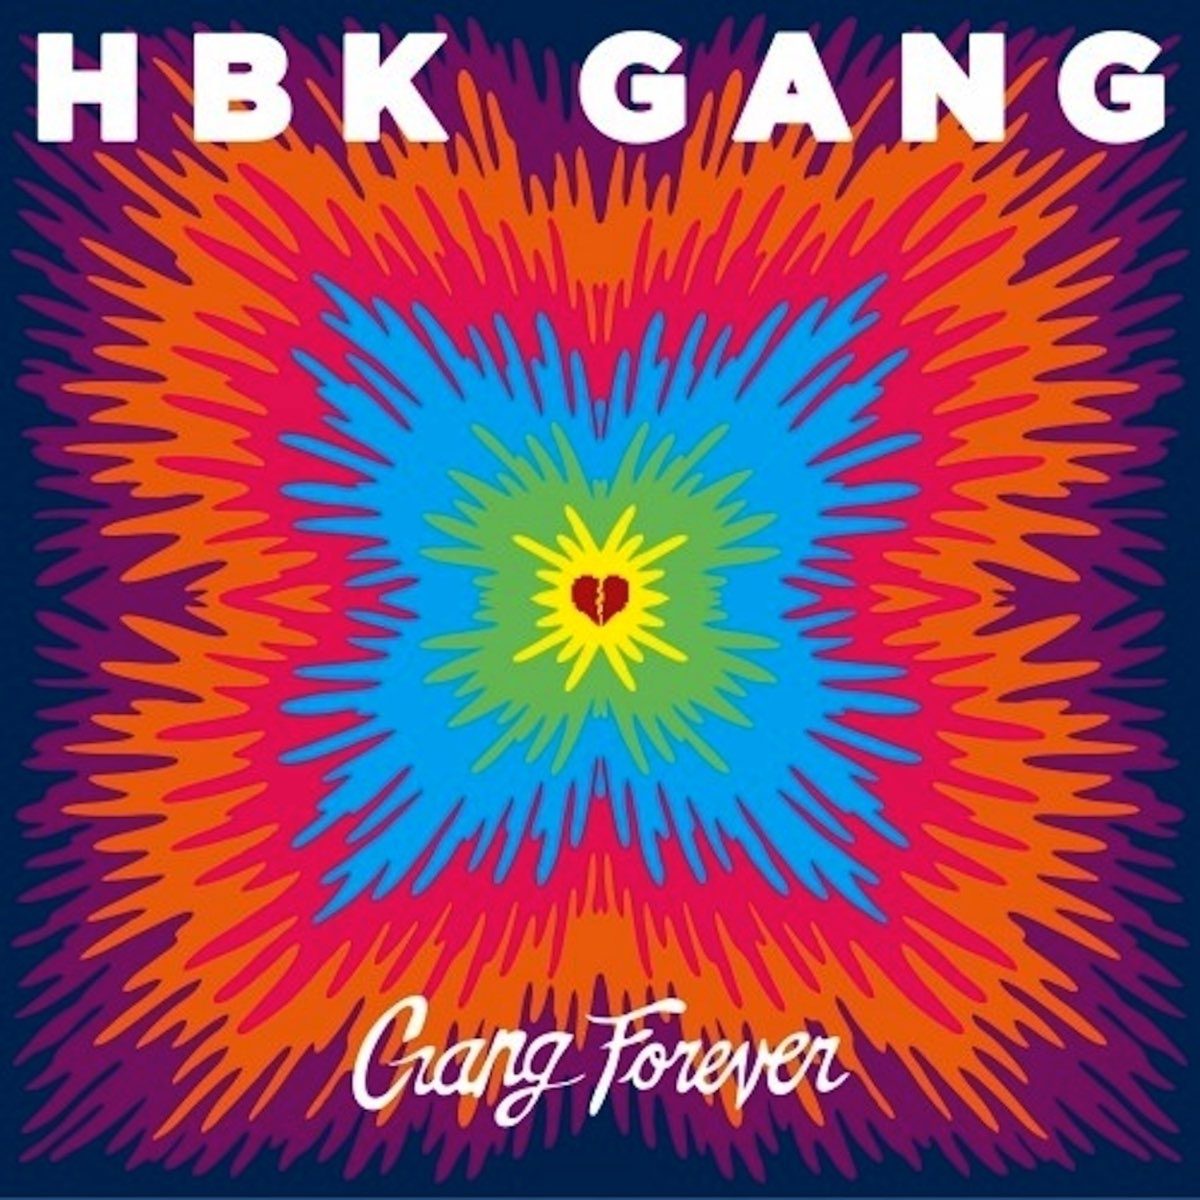 HBK Gang - Gang Forever